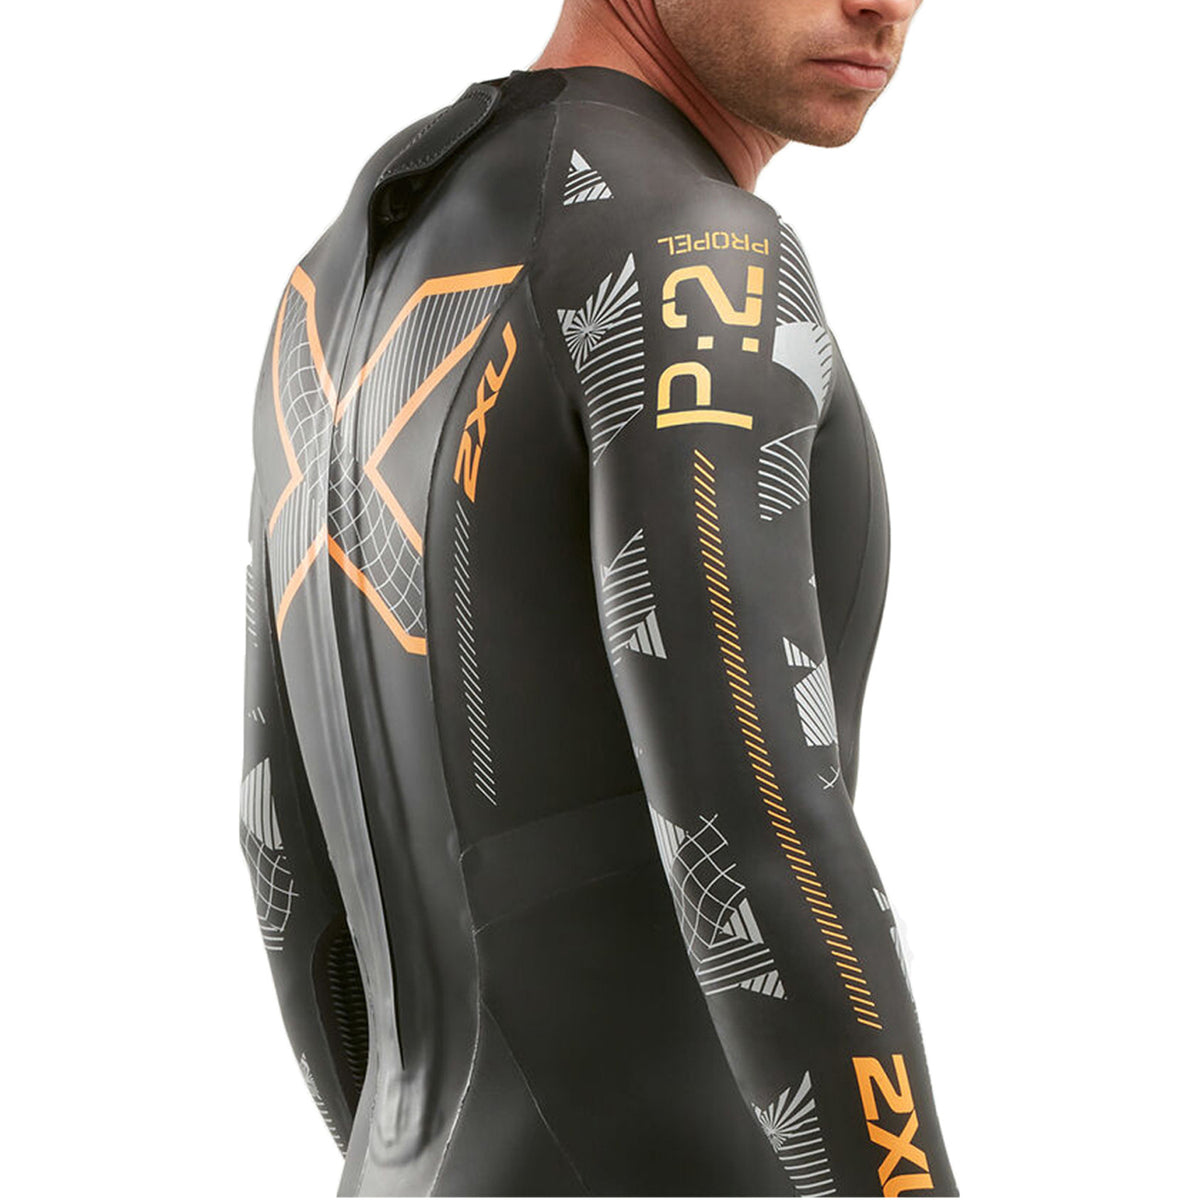 1) □ 公式 □ 2XU/ツータイムズユー トライアスロン用ウェットスーツ P:2プロペル P:2 Propel Triathlon Wetsuit - Black/Orange Fizz [メンズ] MW4990c BLK/ORG STYLE BIKE ONLINE SHOP